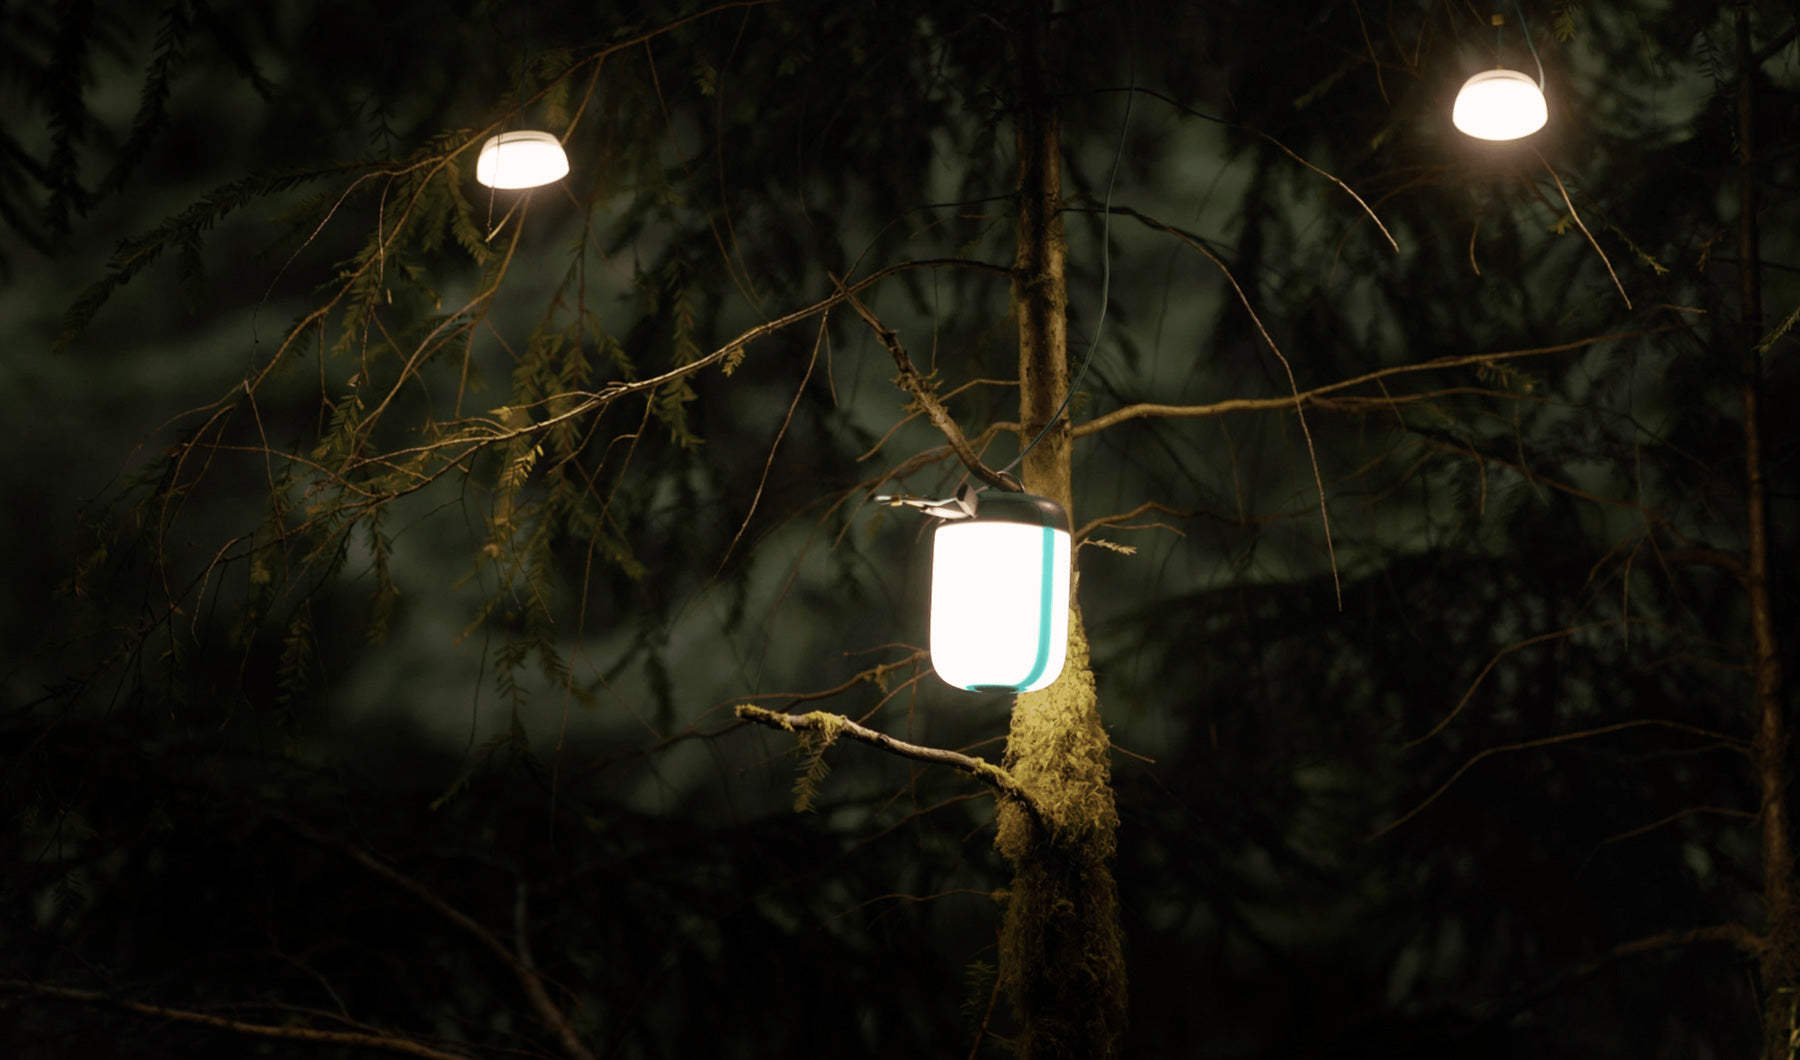 BioLite AlpenGlow Lantern 250